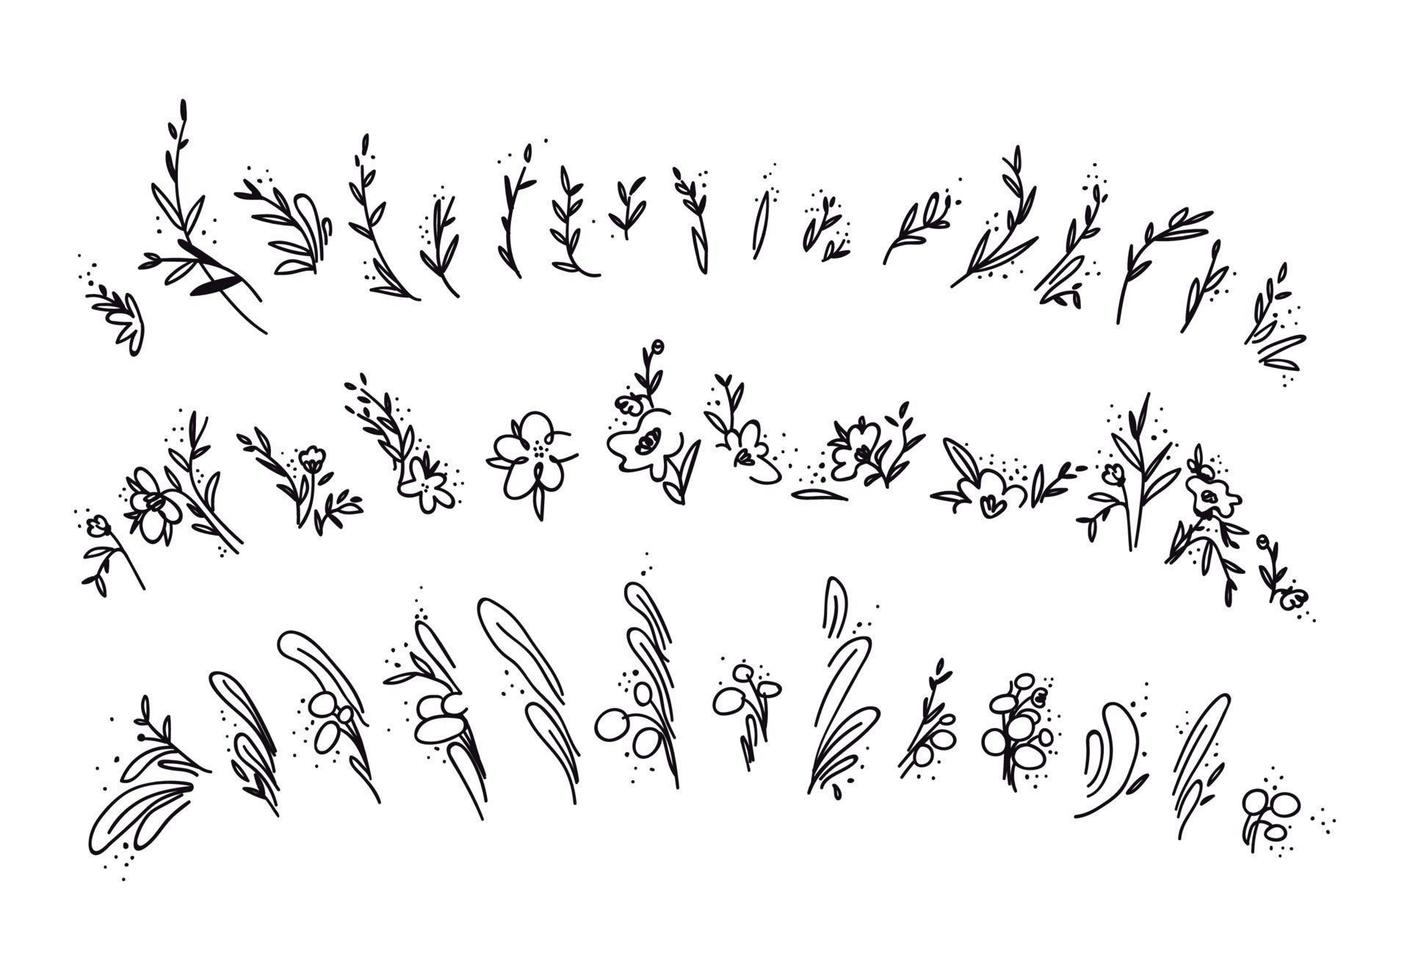 handgetekende set doodles van twijgen, bloemen en bladeren. verzameling getekende abstracte bloemen en twijgen. vectorillustratie van een groep decoratieve elementen op een witte achtergrond. vector